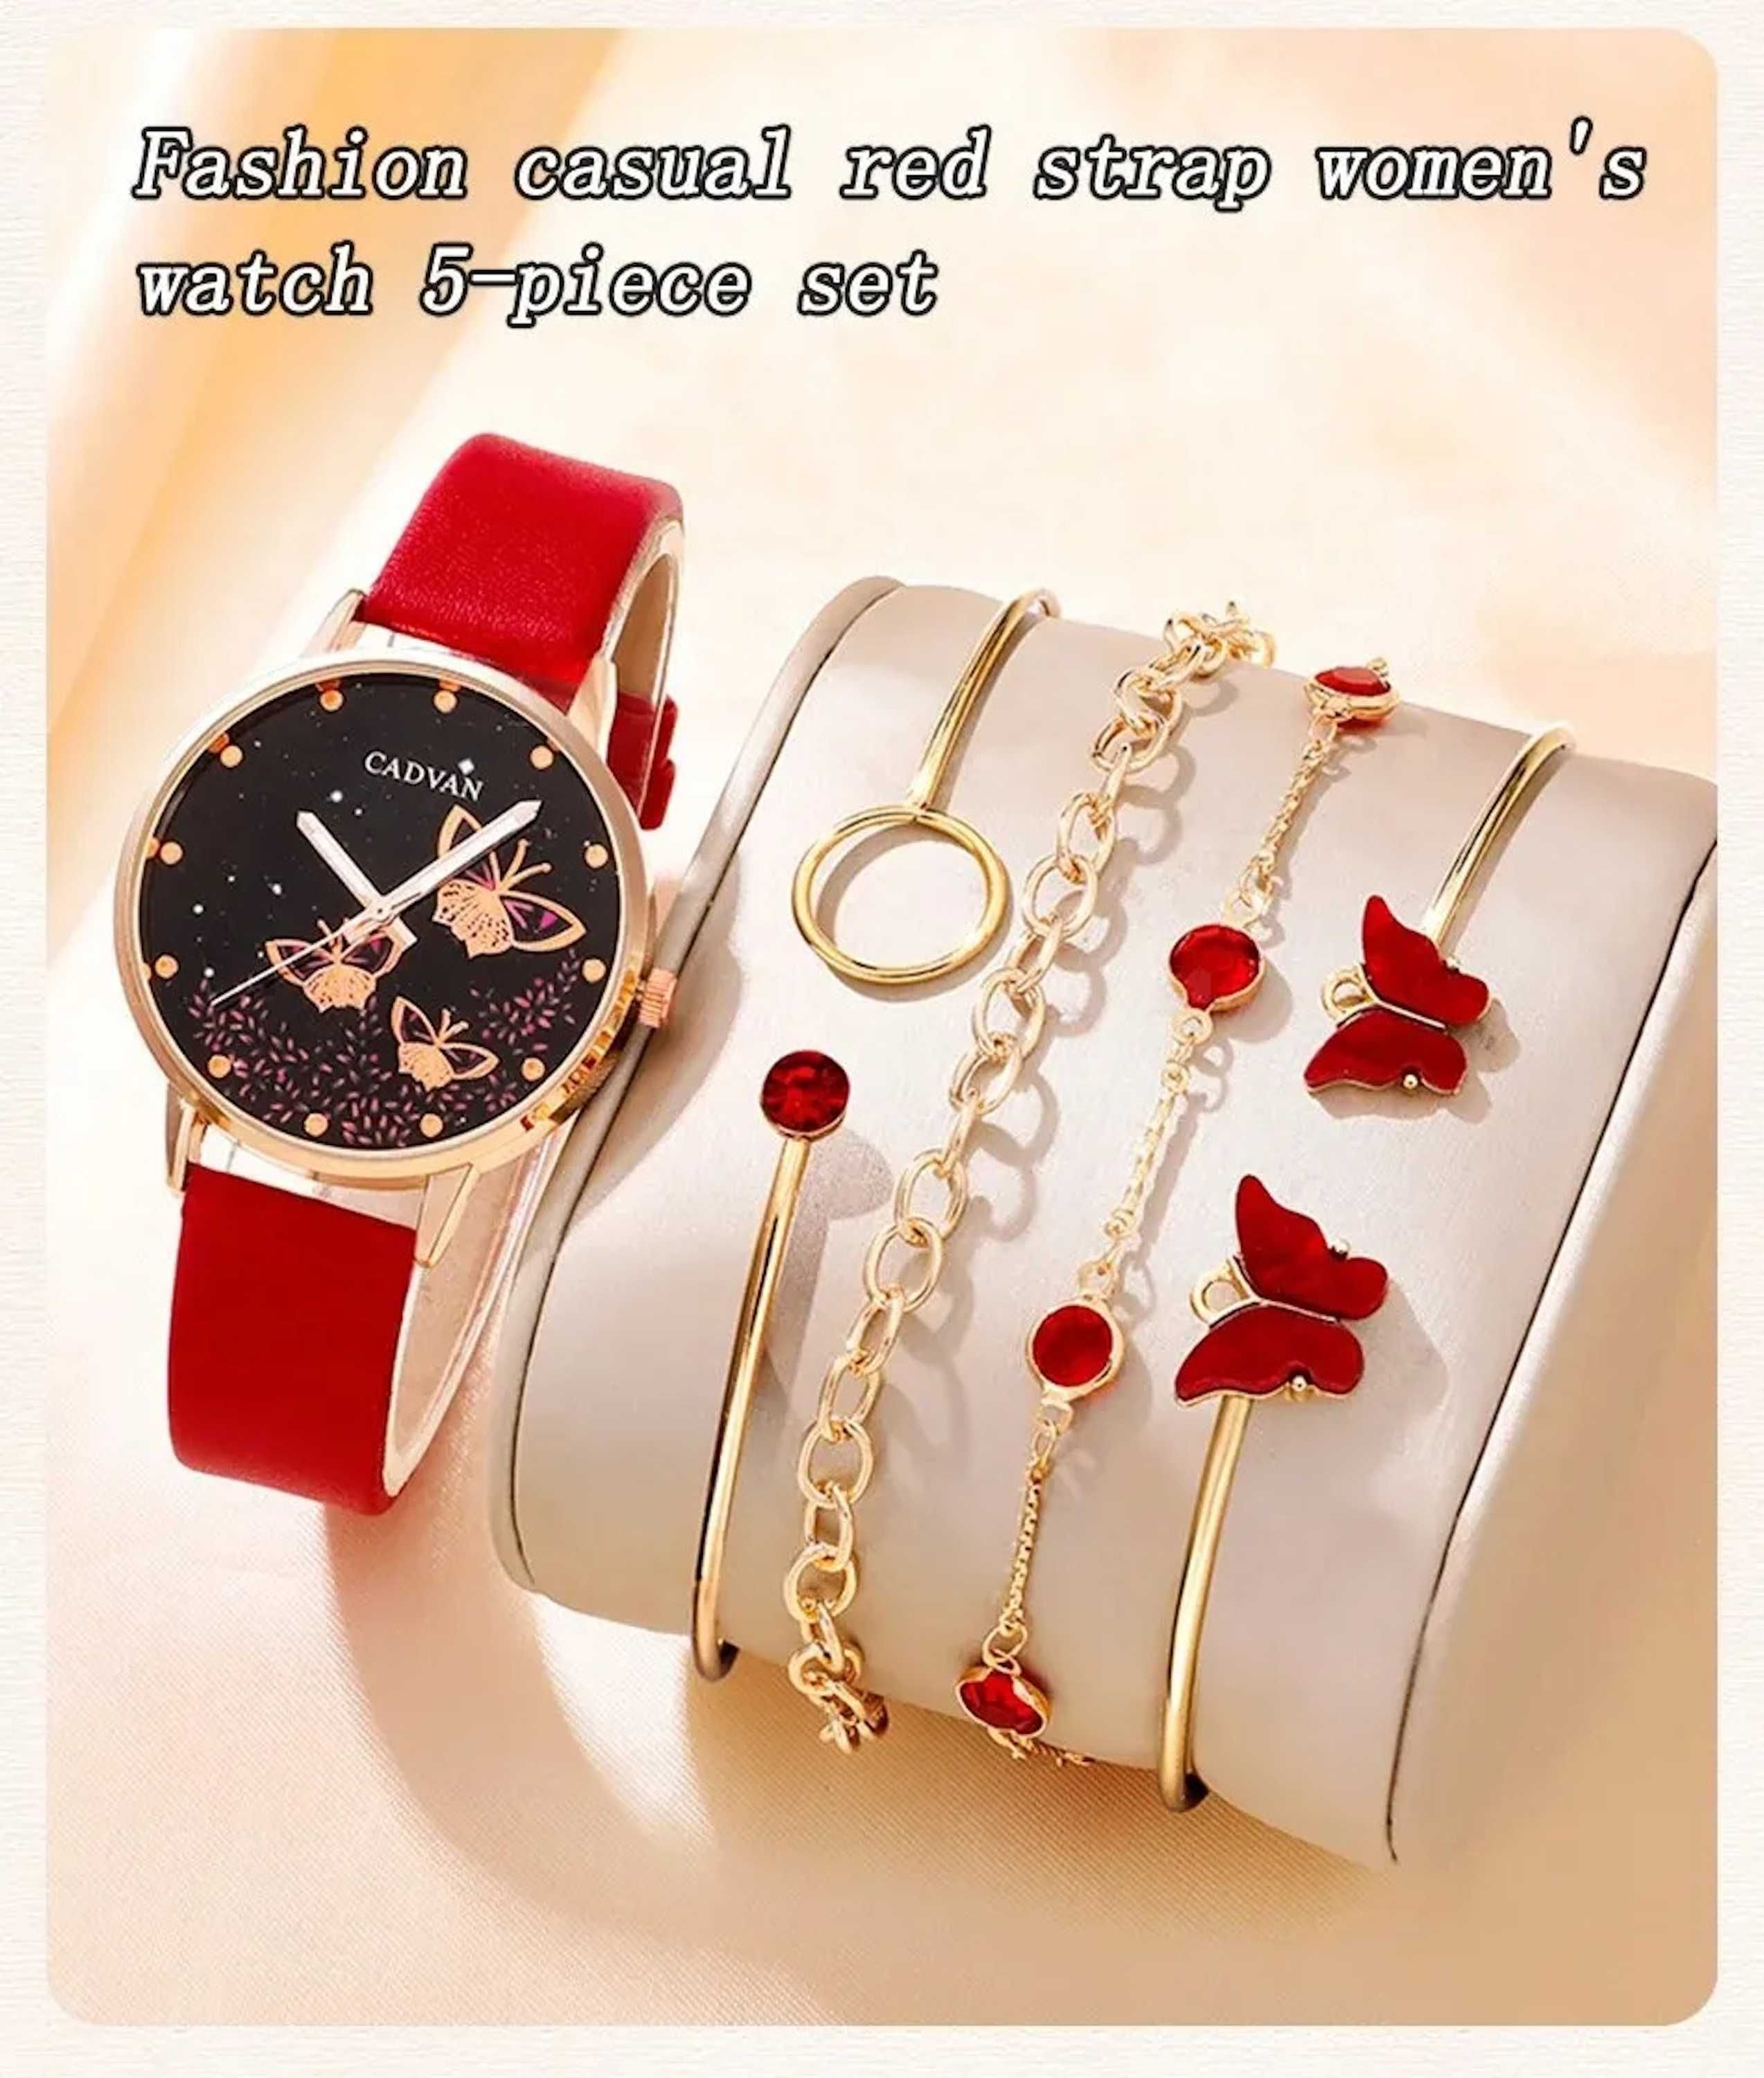 Шикарные женские кварцевые часы и изысканный набор украшений к ним!